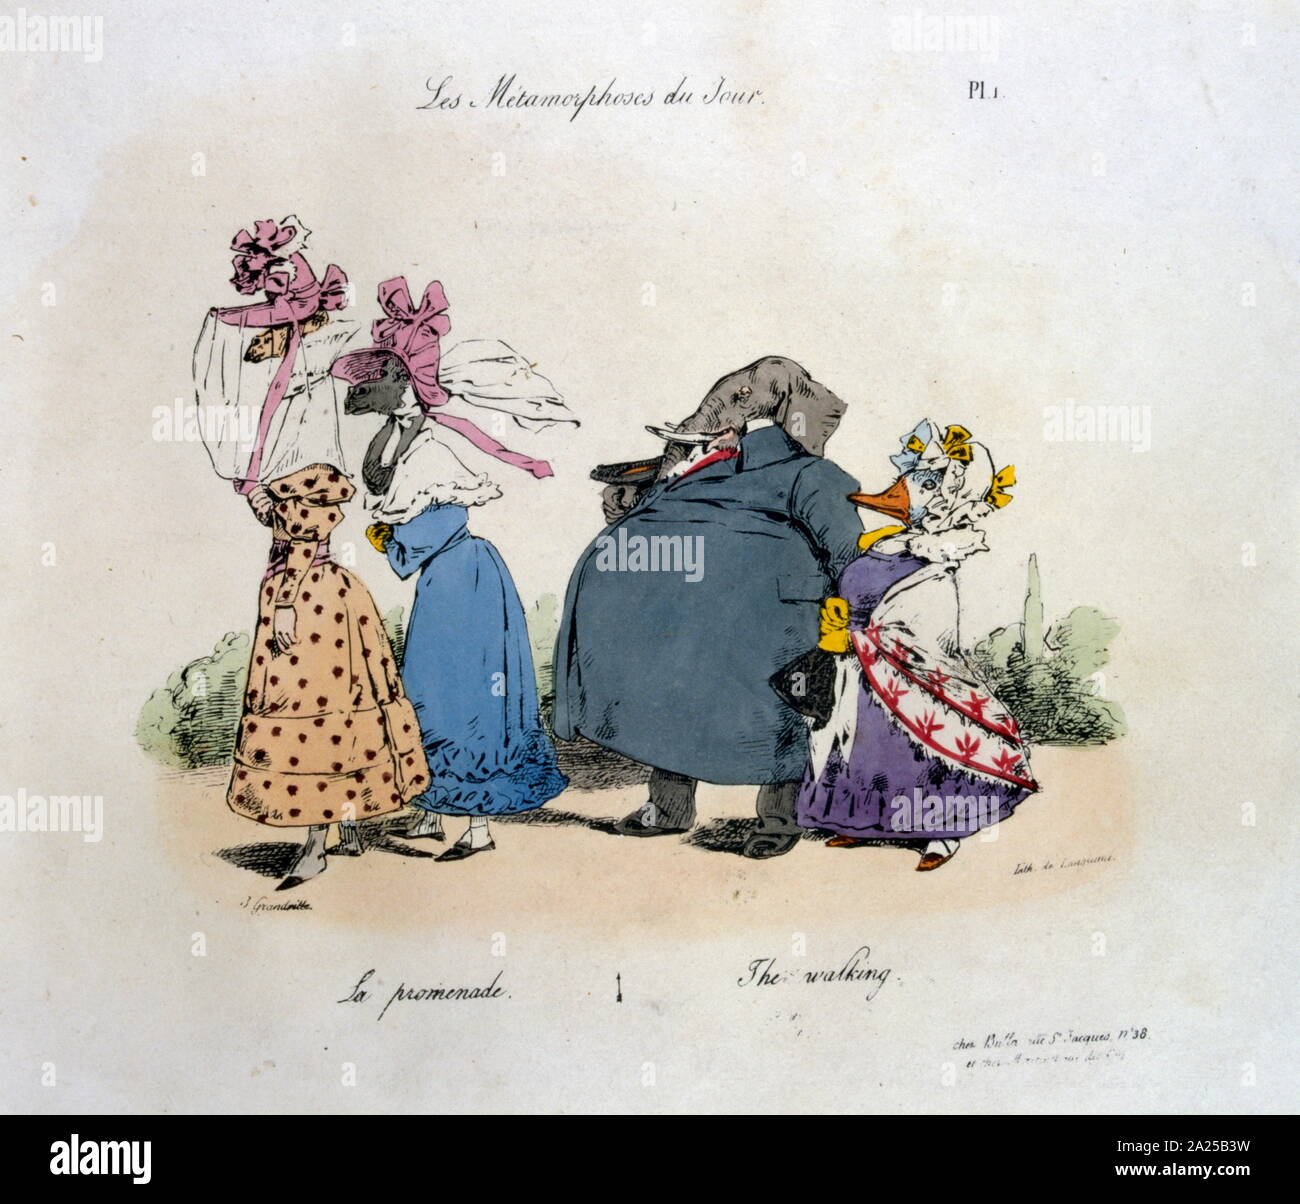 Jean-Ignace-Isidoro Gerard Grandville, 'Les Metamorphoses du jour" 1829.ilustración de una famosa serie de caricaturas políticas Foto de stock